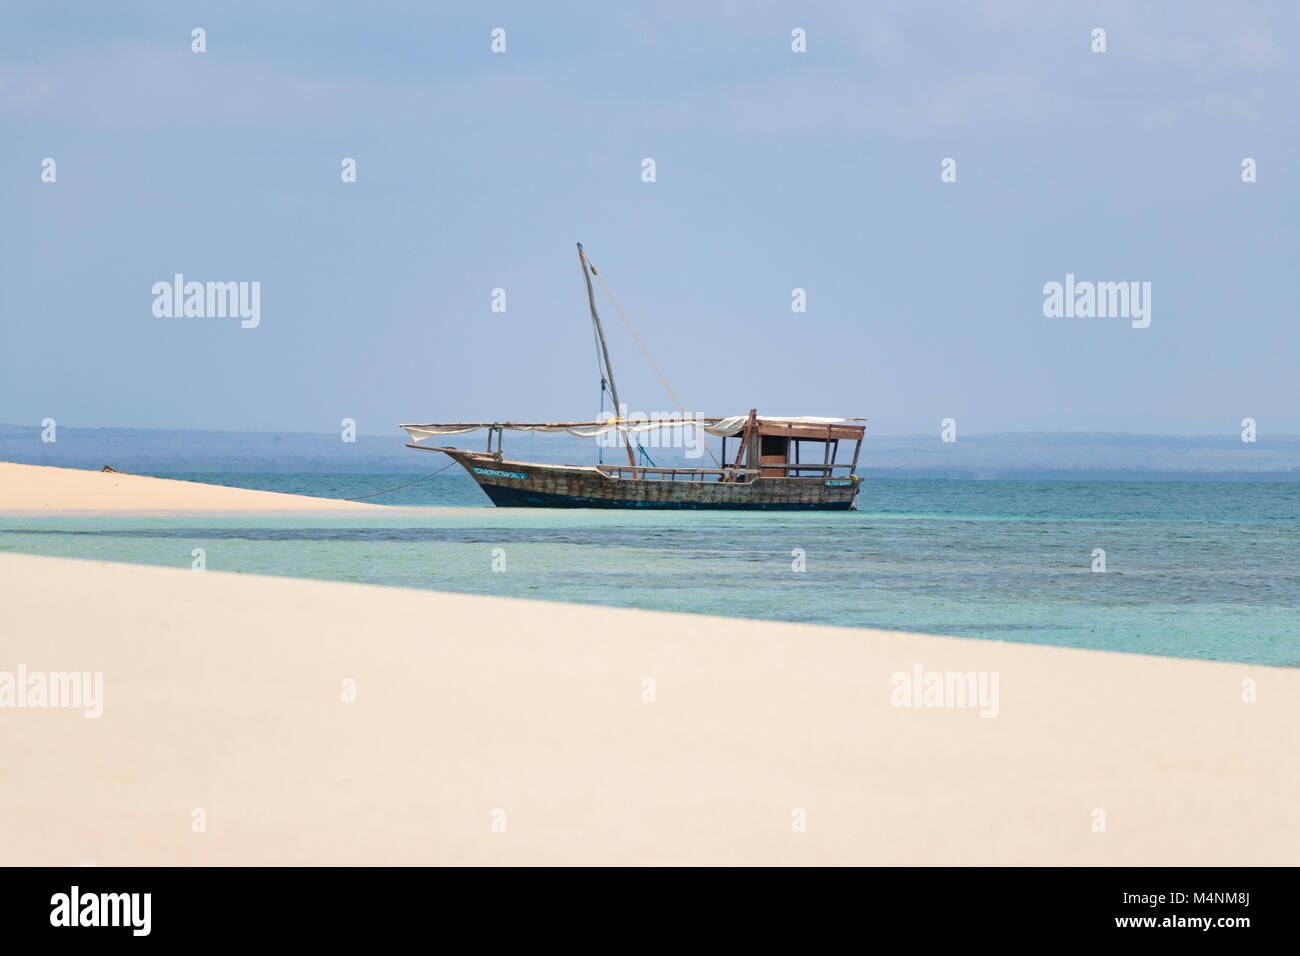 Isola deserta in Mozambico con mare turchese Foto Stock